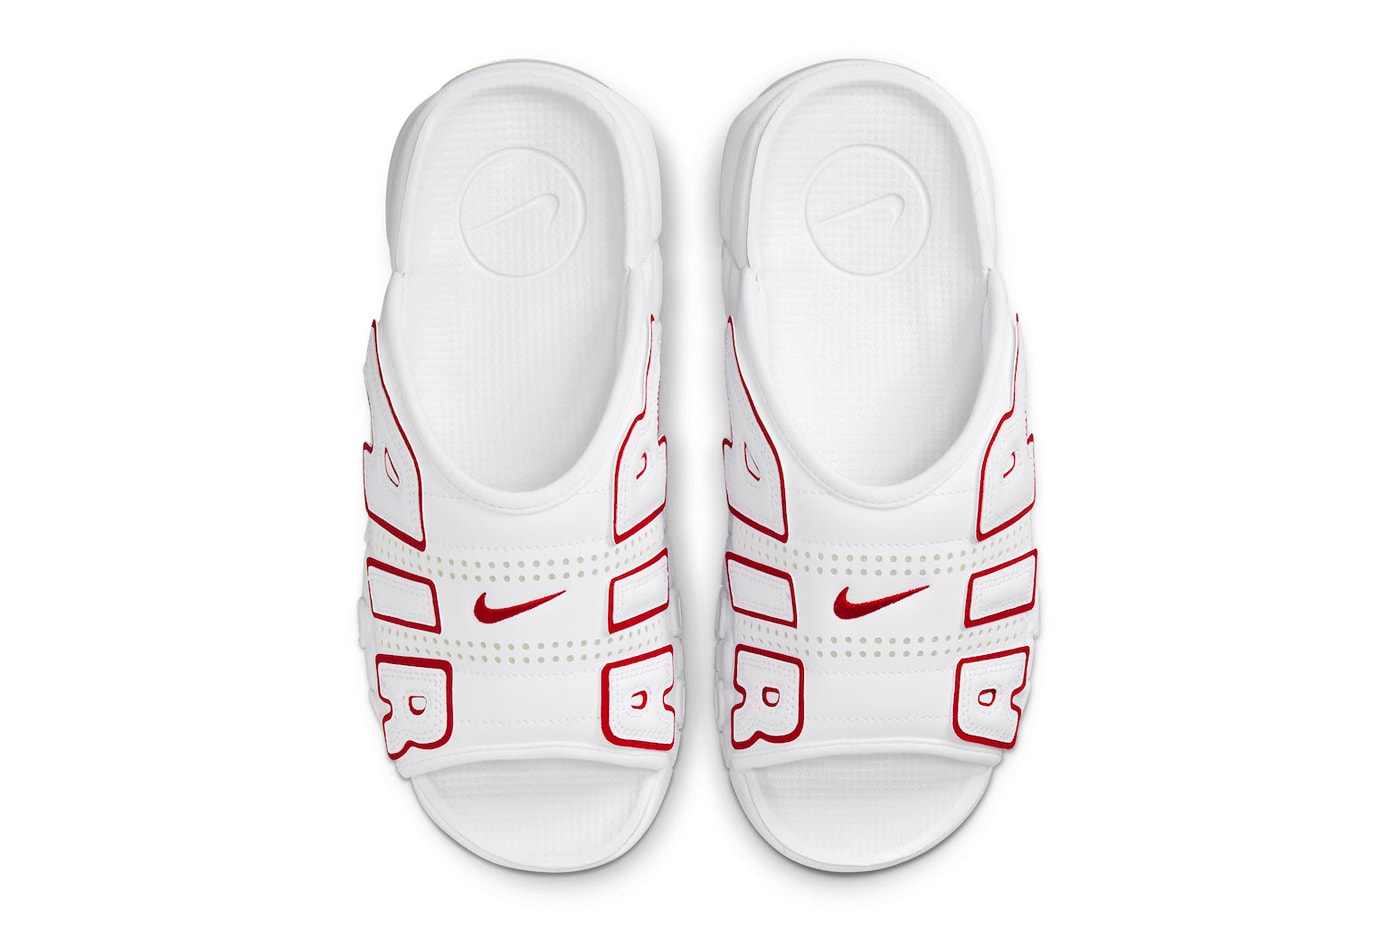 ナイキ エア モア アップテンポ スライドから新色 “ホワイト/レッド”が登場か Nike Air More Uptempo Slide Arrive in "White/Red" FD9884-100 summer beach sandals basketball air jordan michael jordan